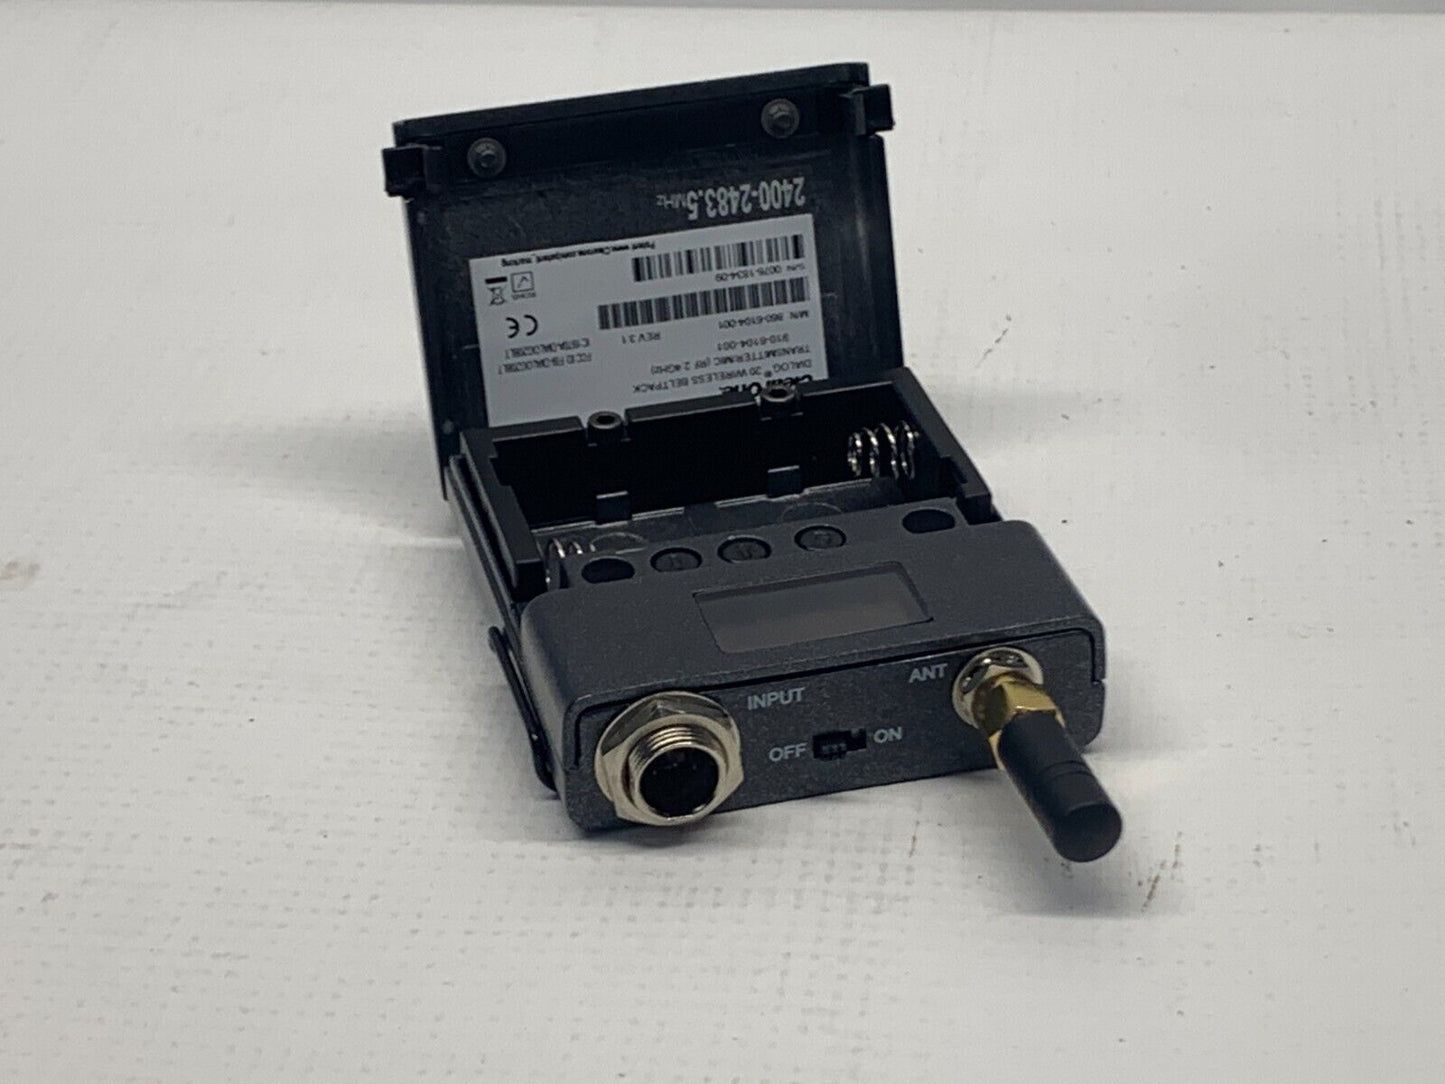 ClearOne Dialog 20 Wireless Beltpack Transmitter/Mic (RF 2.4 GHz) 910-6104-001